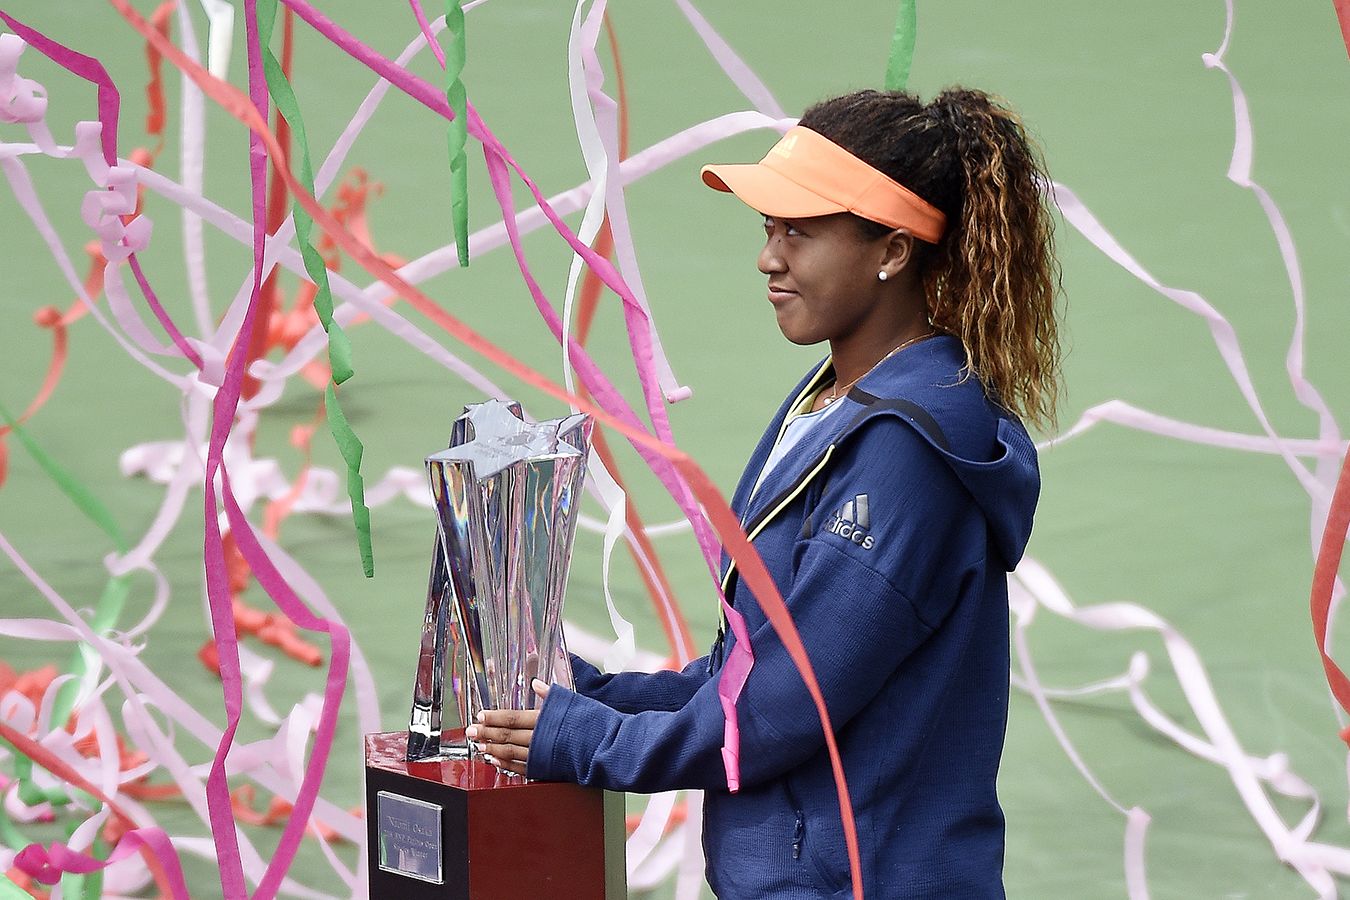 Турниры WTA-1000 в Индиан-Уэллсе и Майами: какие теннисистки побеждали, Шарапова, Гантухова, Азаренко, рейтинг лучших